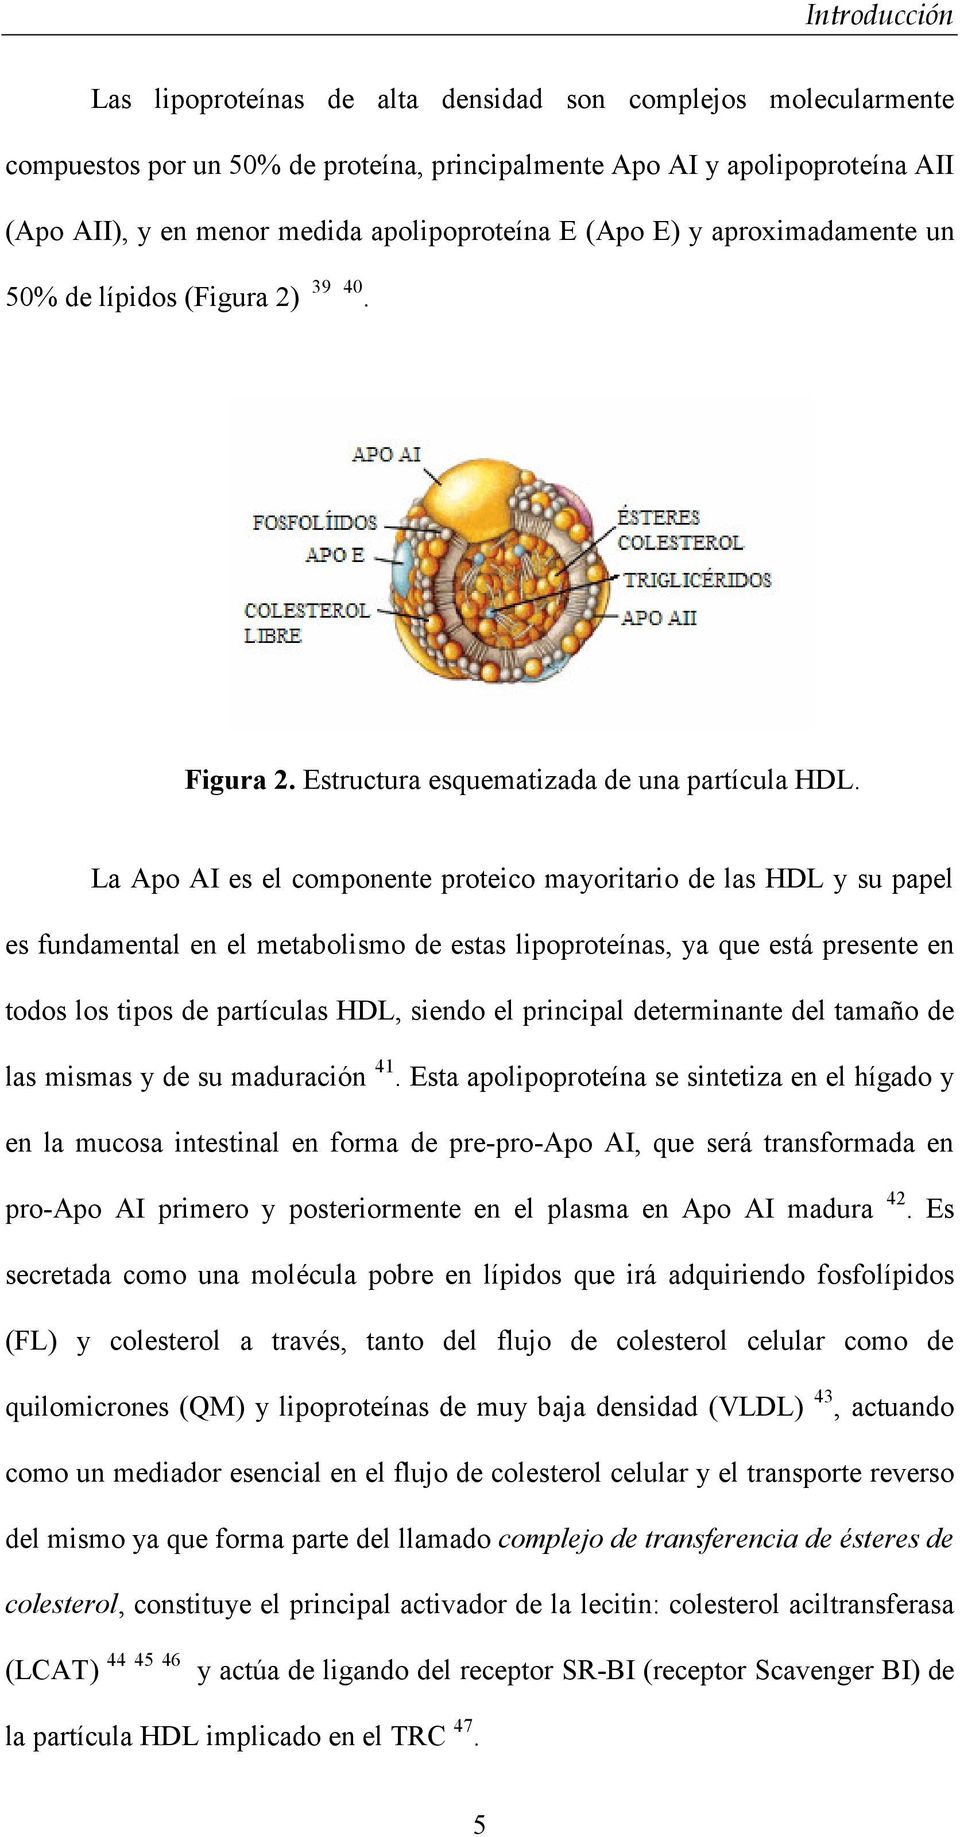 La Apo AI es el componente proteico mayoritario de las HDL y su papel es fundamental en el metabolismo de estas lipoproteínas, ya que está presente en todos los tipos de partículas HDL, siendo el